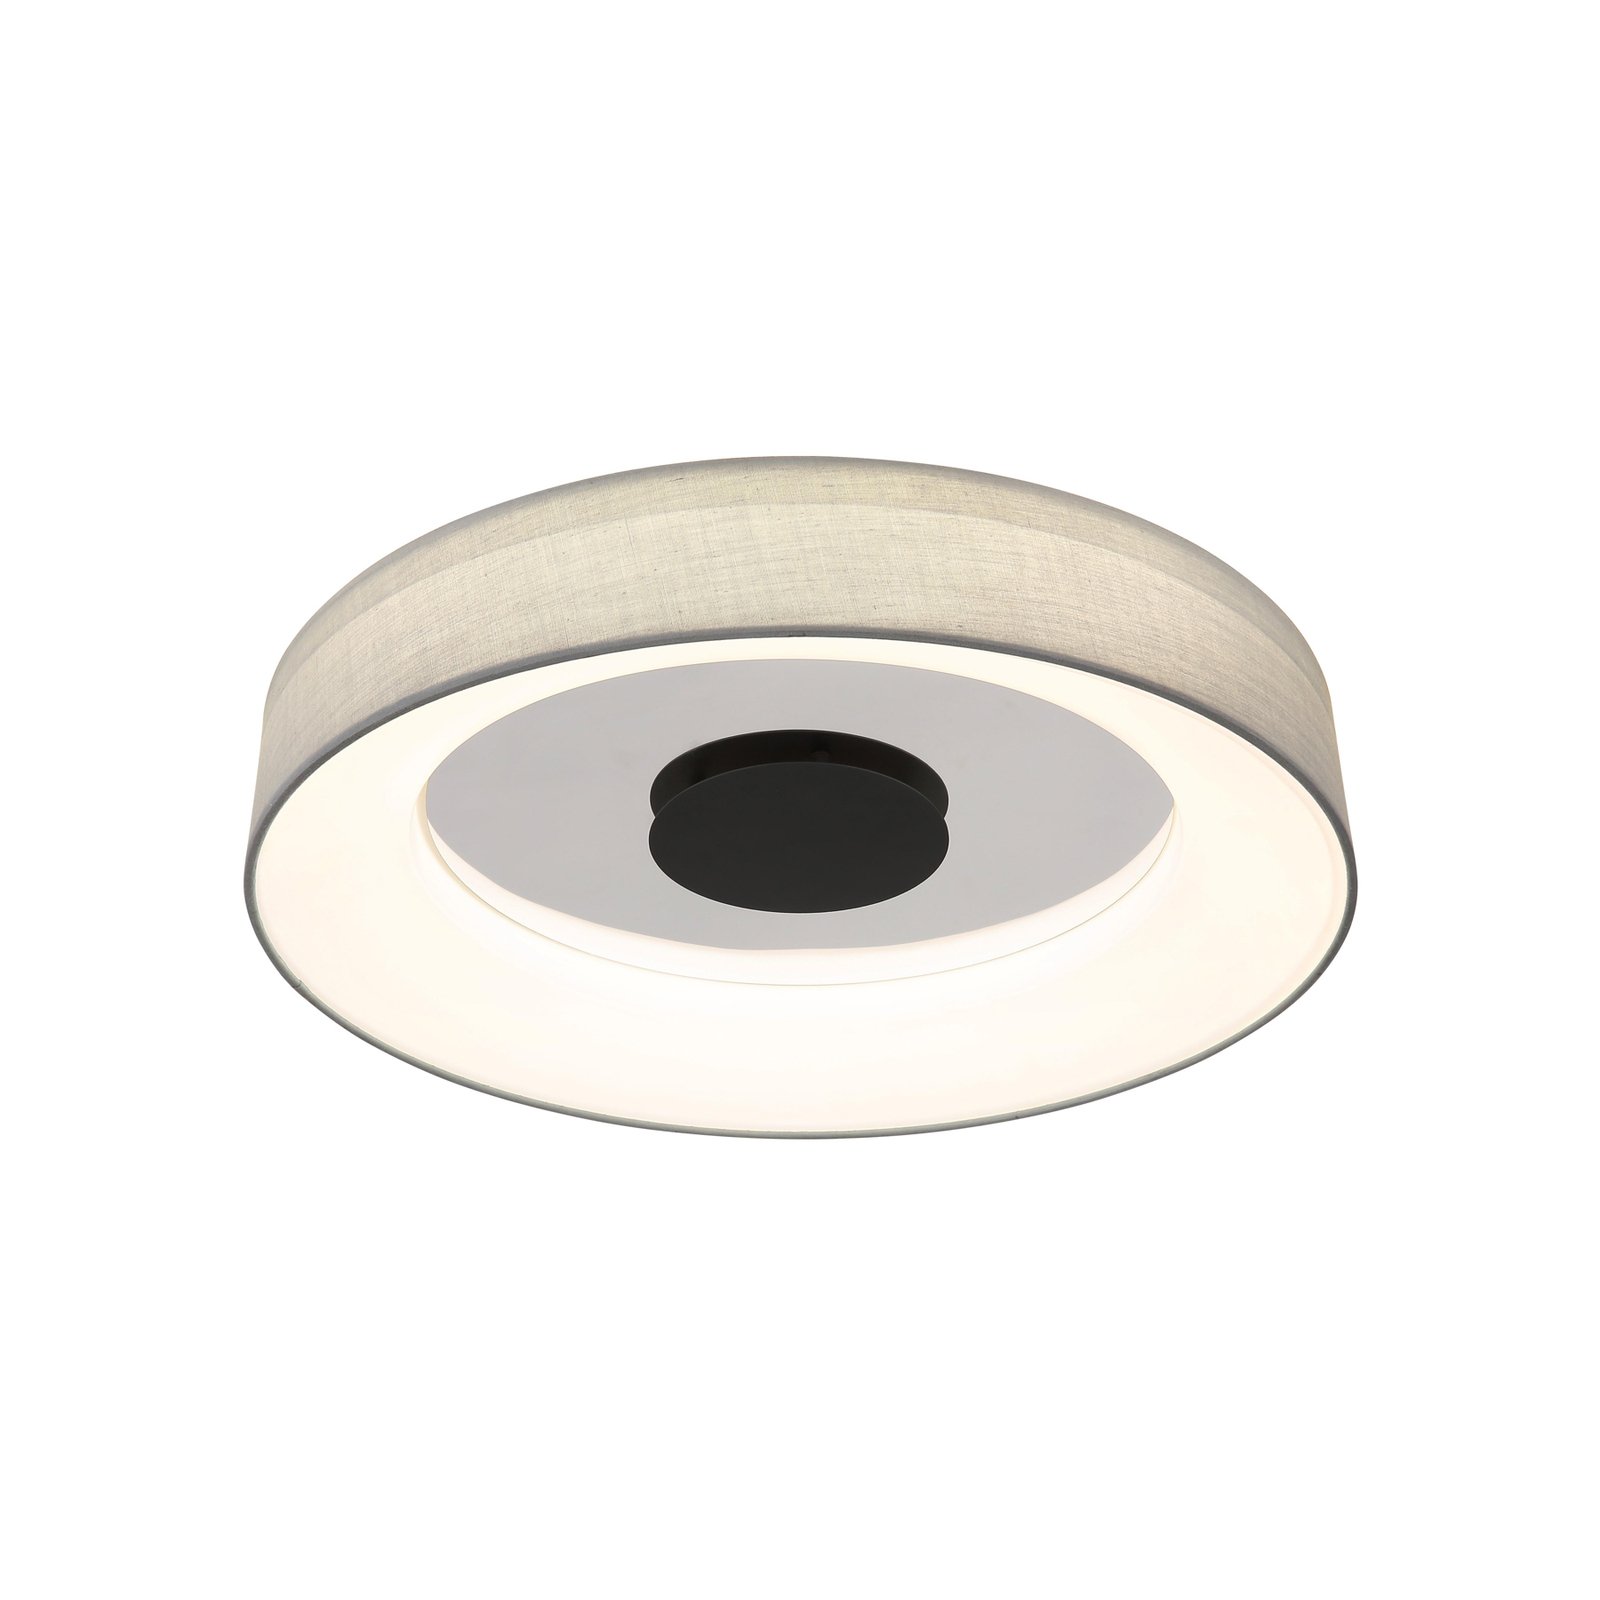 Smart-LED-Deckenleuchte Terpsa, weiß/grau, Ø 46,8 cm, Stoff